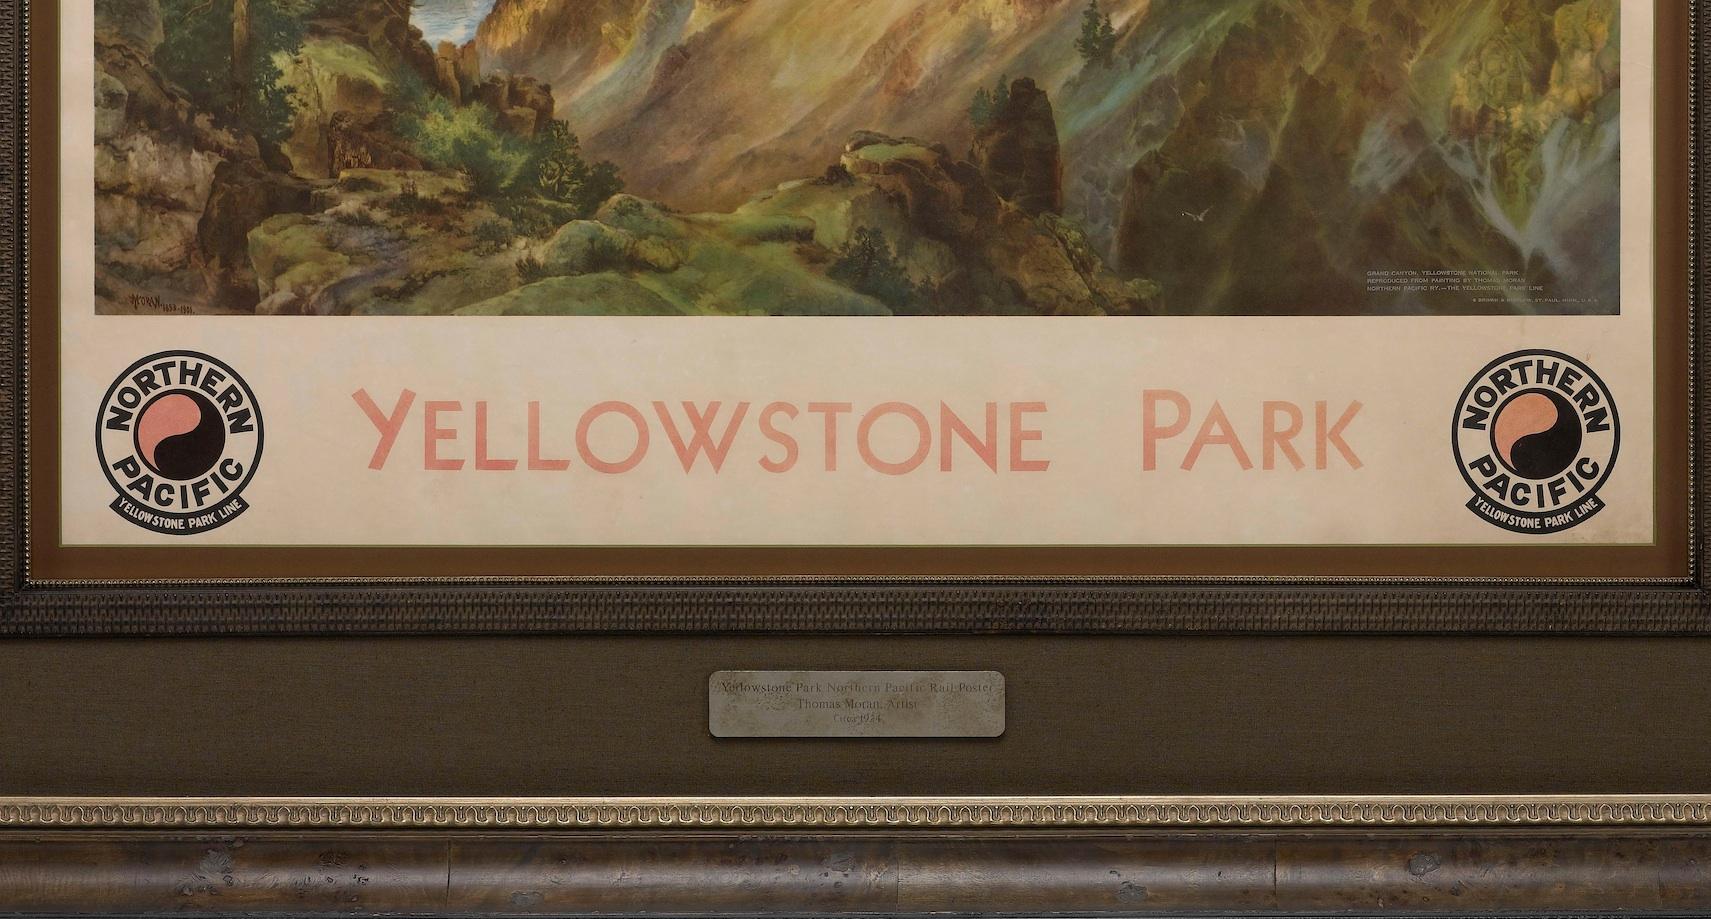 Es handelt sich um ein Plakat der Northern Pacific Railroad, das für ihre Yellowstone Park Line wirbt. Die zentrale Szene ist ein farbiger Reproduktionsdruck nach Thomas Morans The Grand Canyon of the Yellowstone, 1893-1901. In der rechten unteren